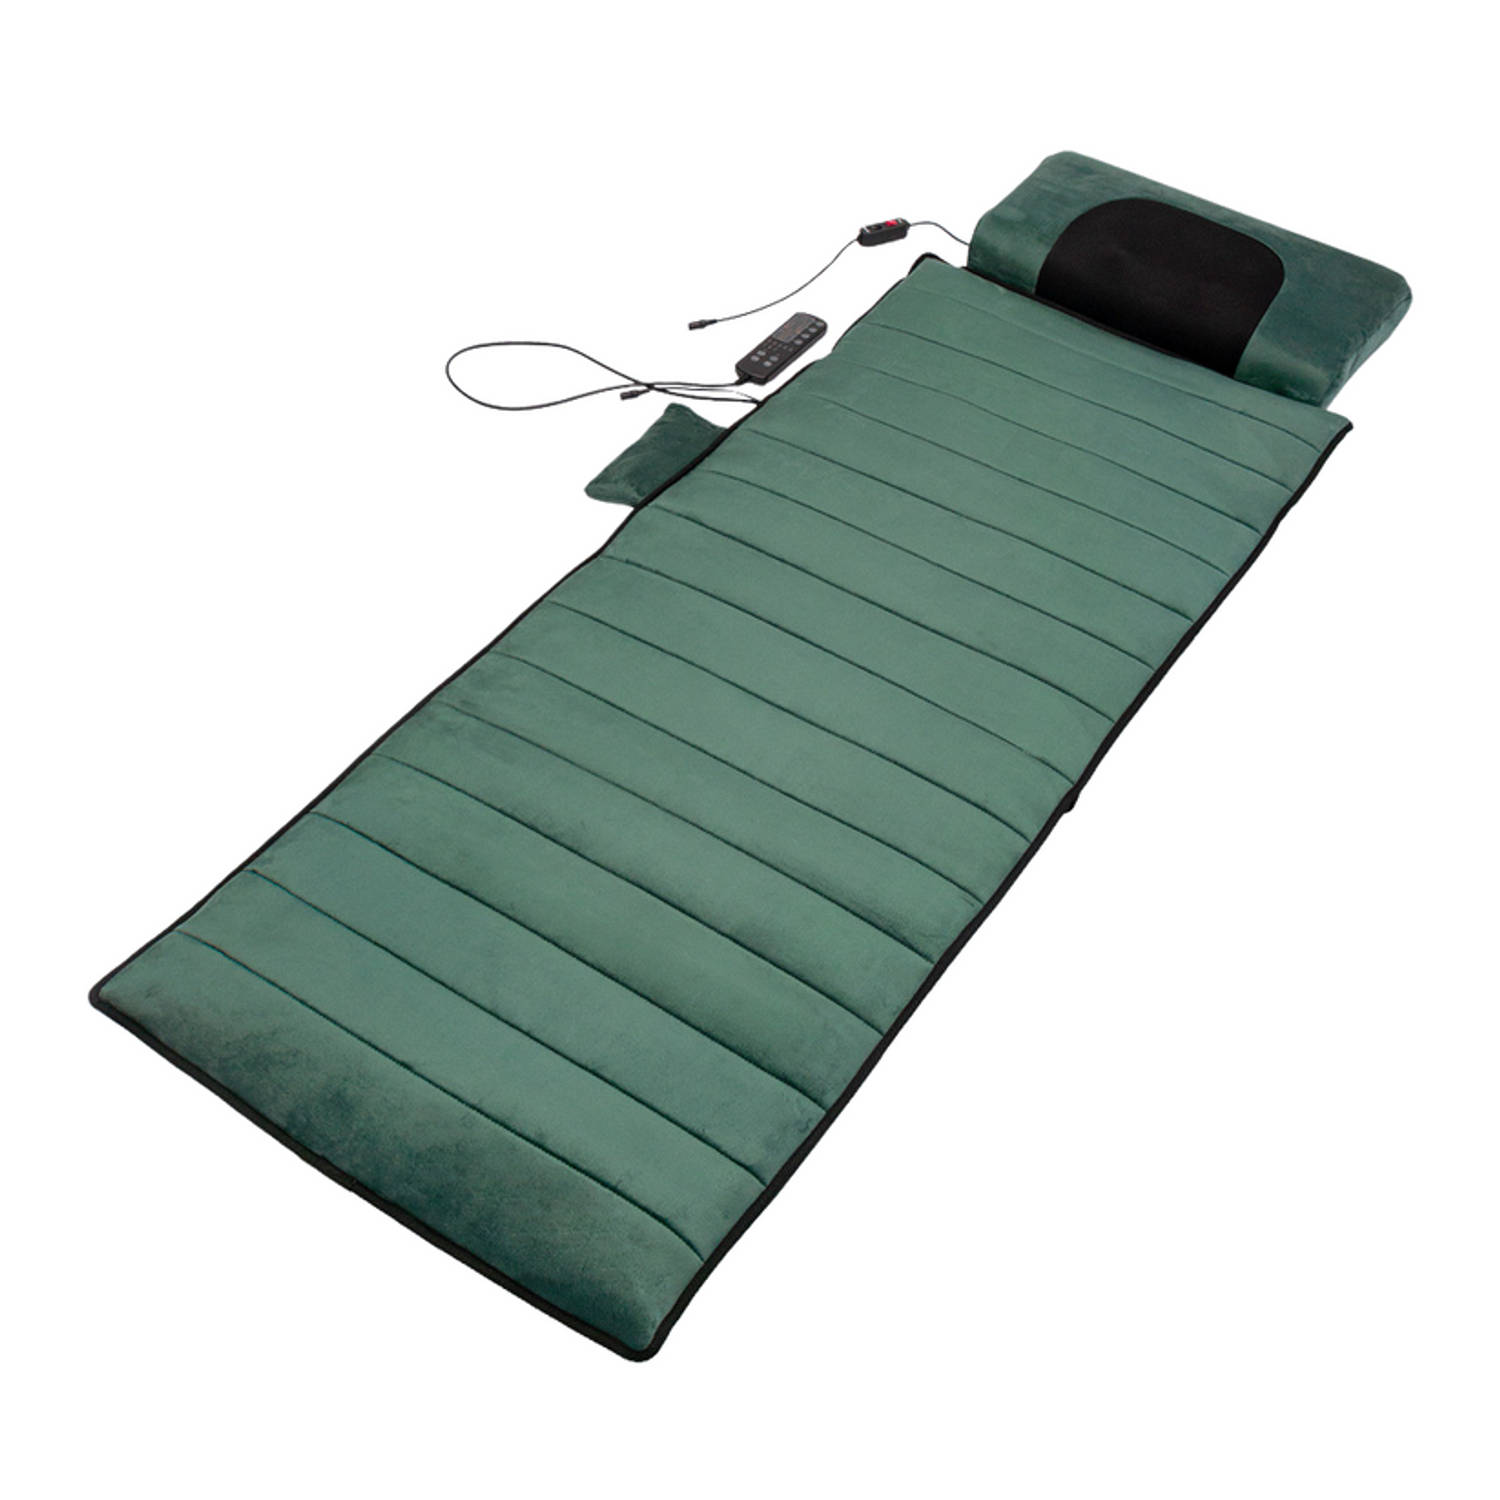 Felman Remedy Massage System Incl. Gratis Cover- Massagekussen - Shiatsu - Warmtetherapie - 190 x 65 cm